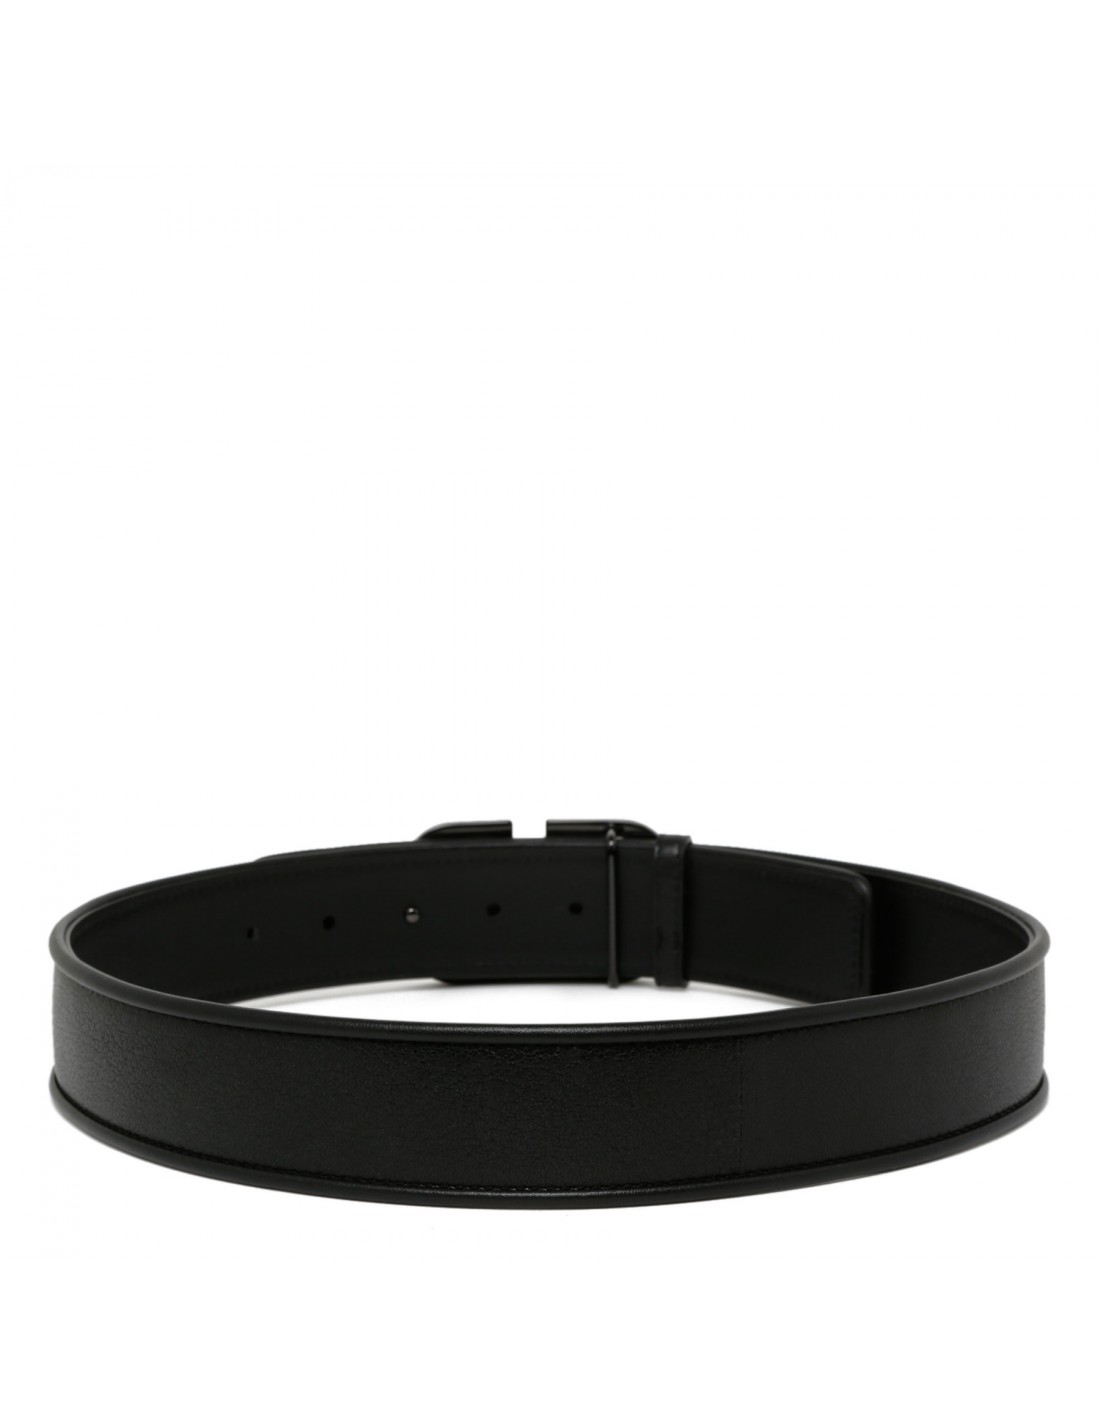 VLogo black leather belt